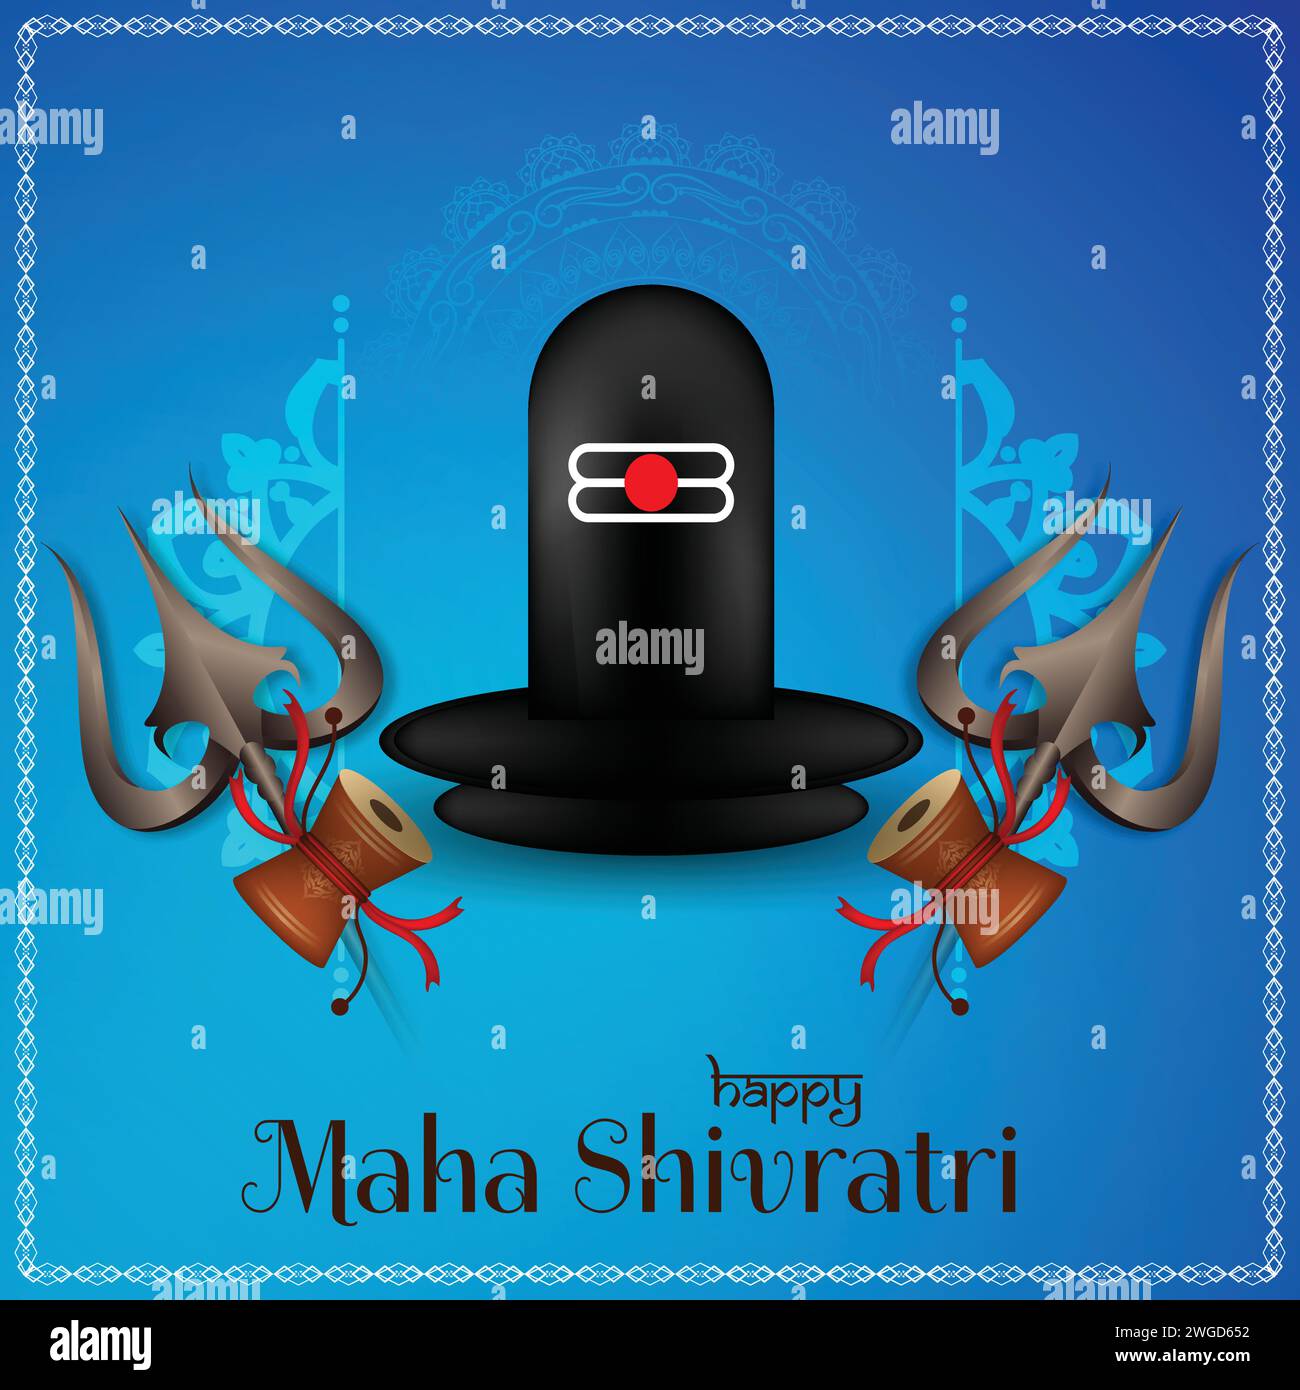 Vektor-Illustration des Maha Shivratri hindu Festivals Stock Vektor